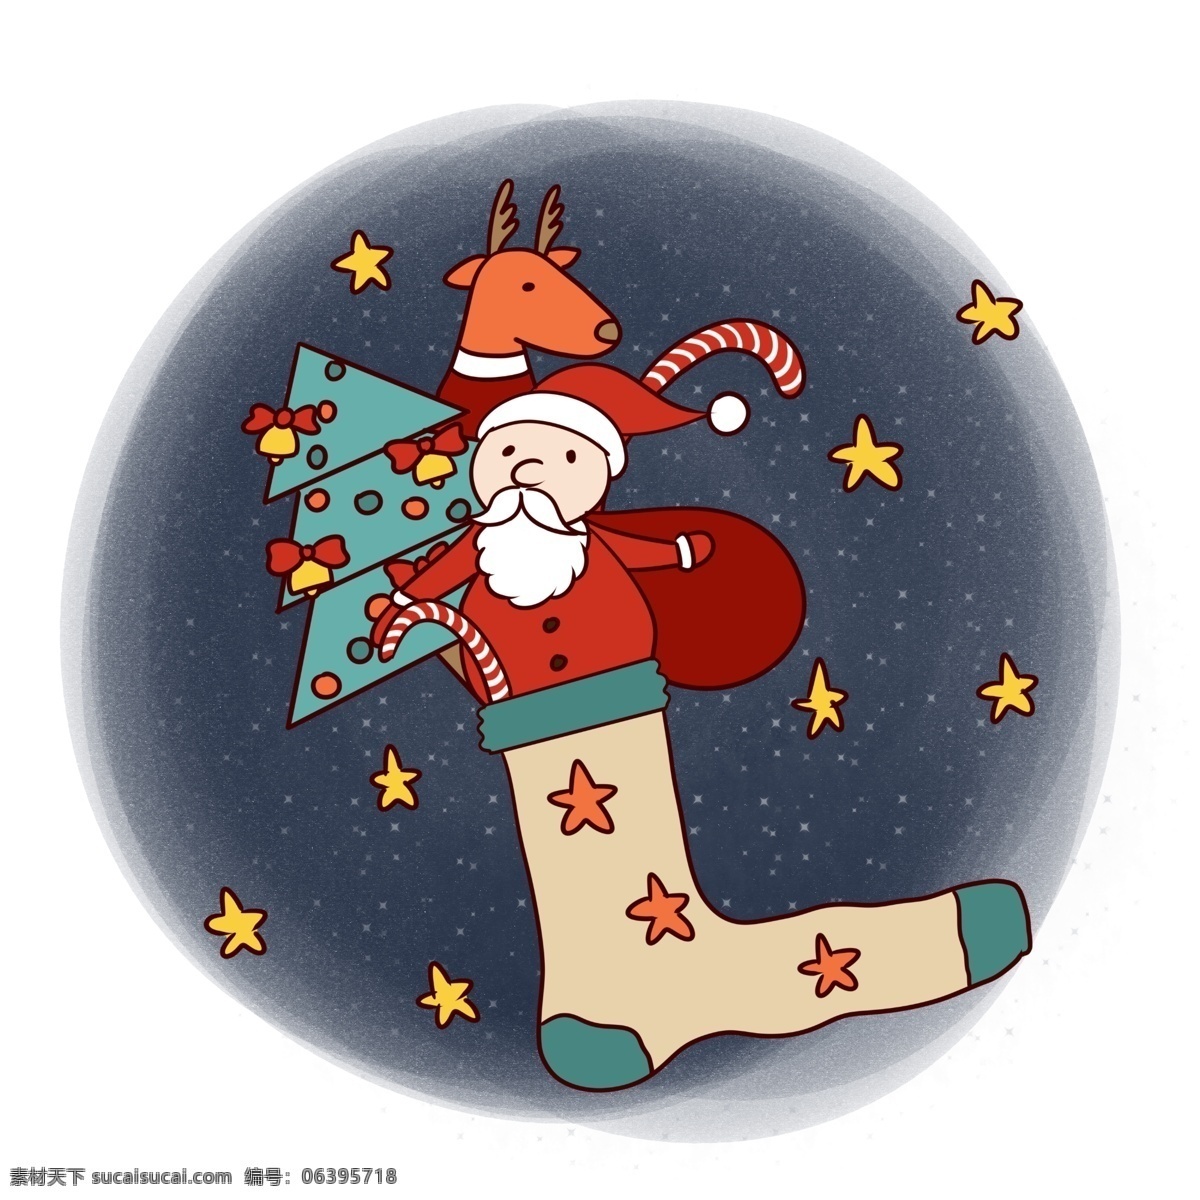 手绘 卡通 可爱 圣诞节 圣诞老人 麋鹿 矢量 免抠 圣诞快乐 礼物 圣诞树 铃铛 夜晚 圣诞夜 袜子 星空 拐杖糖